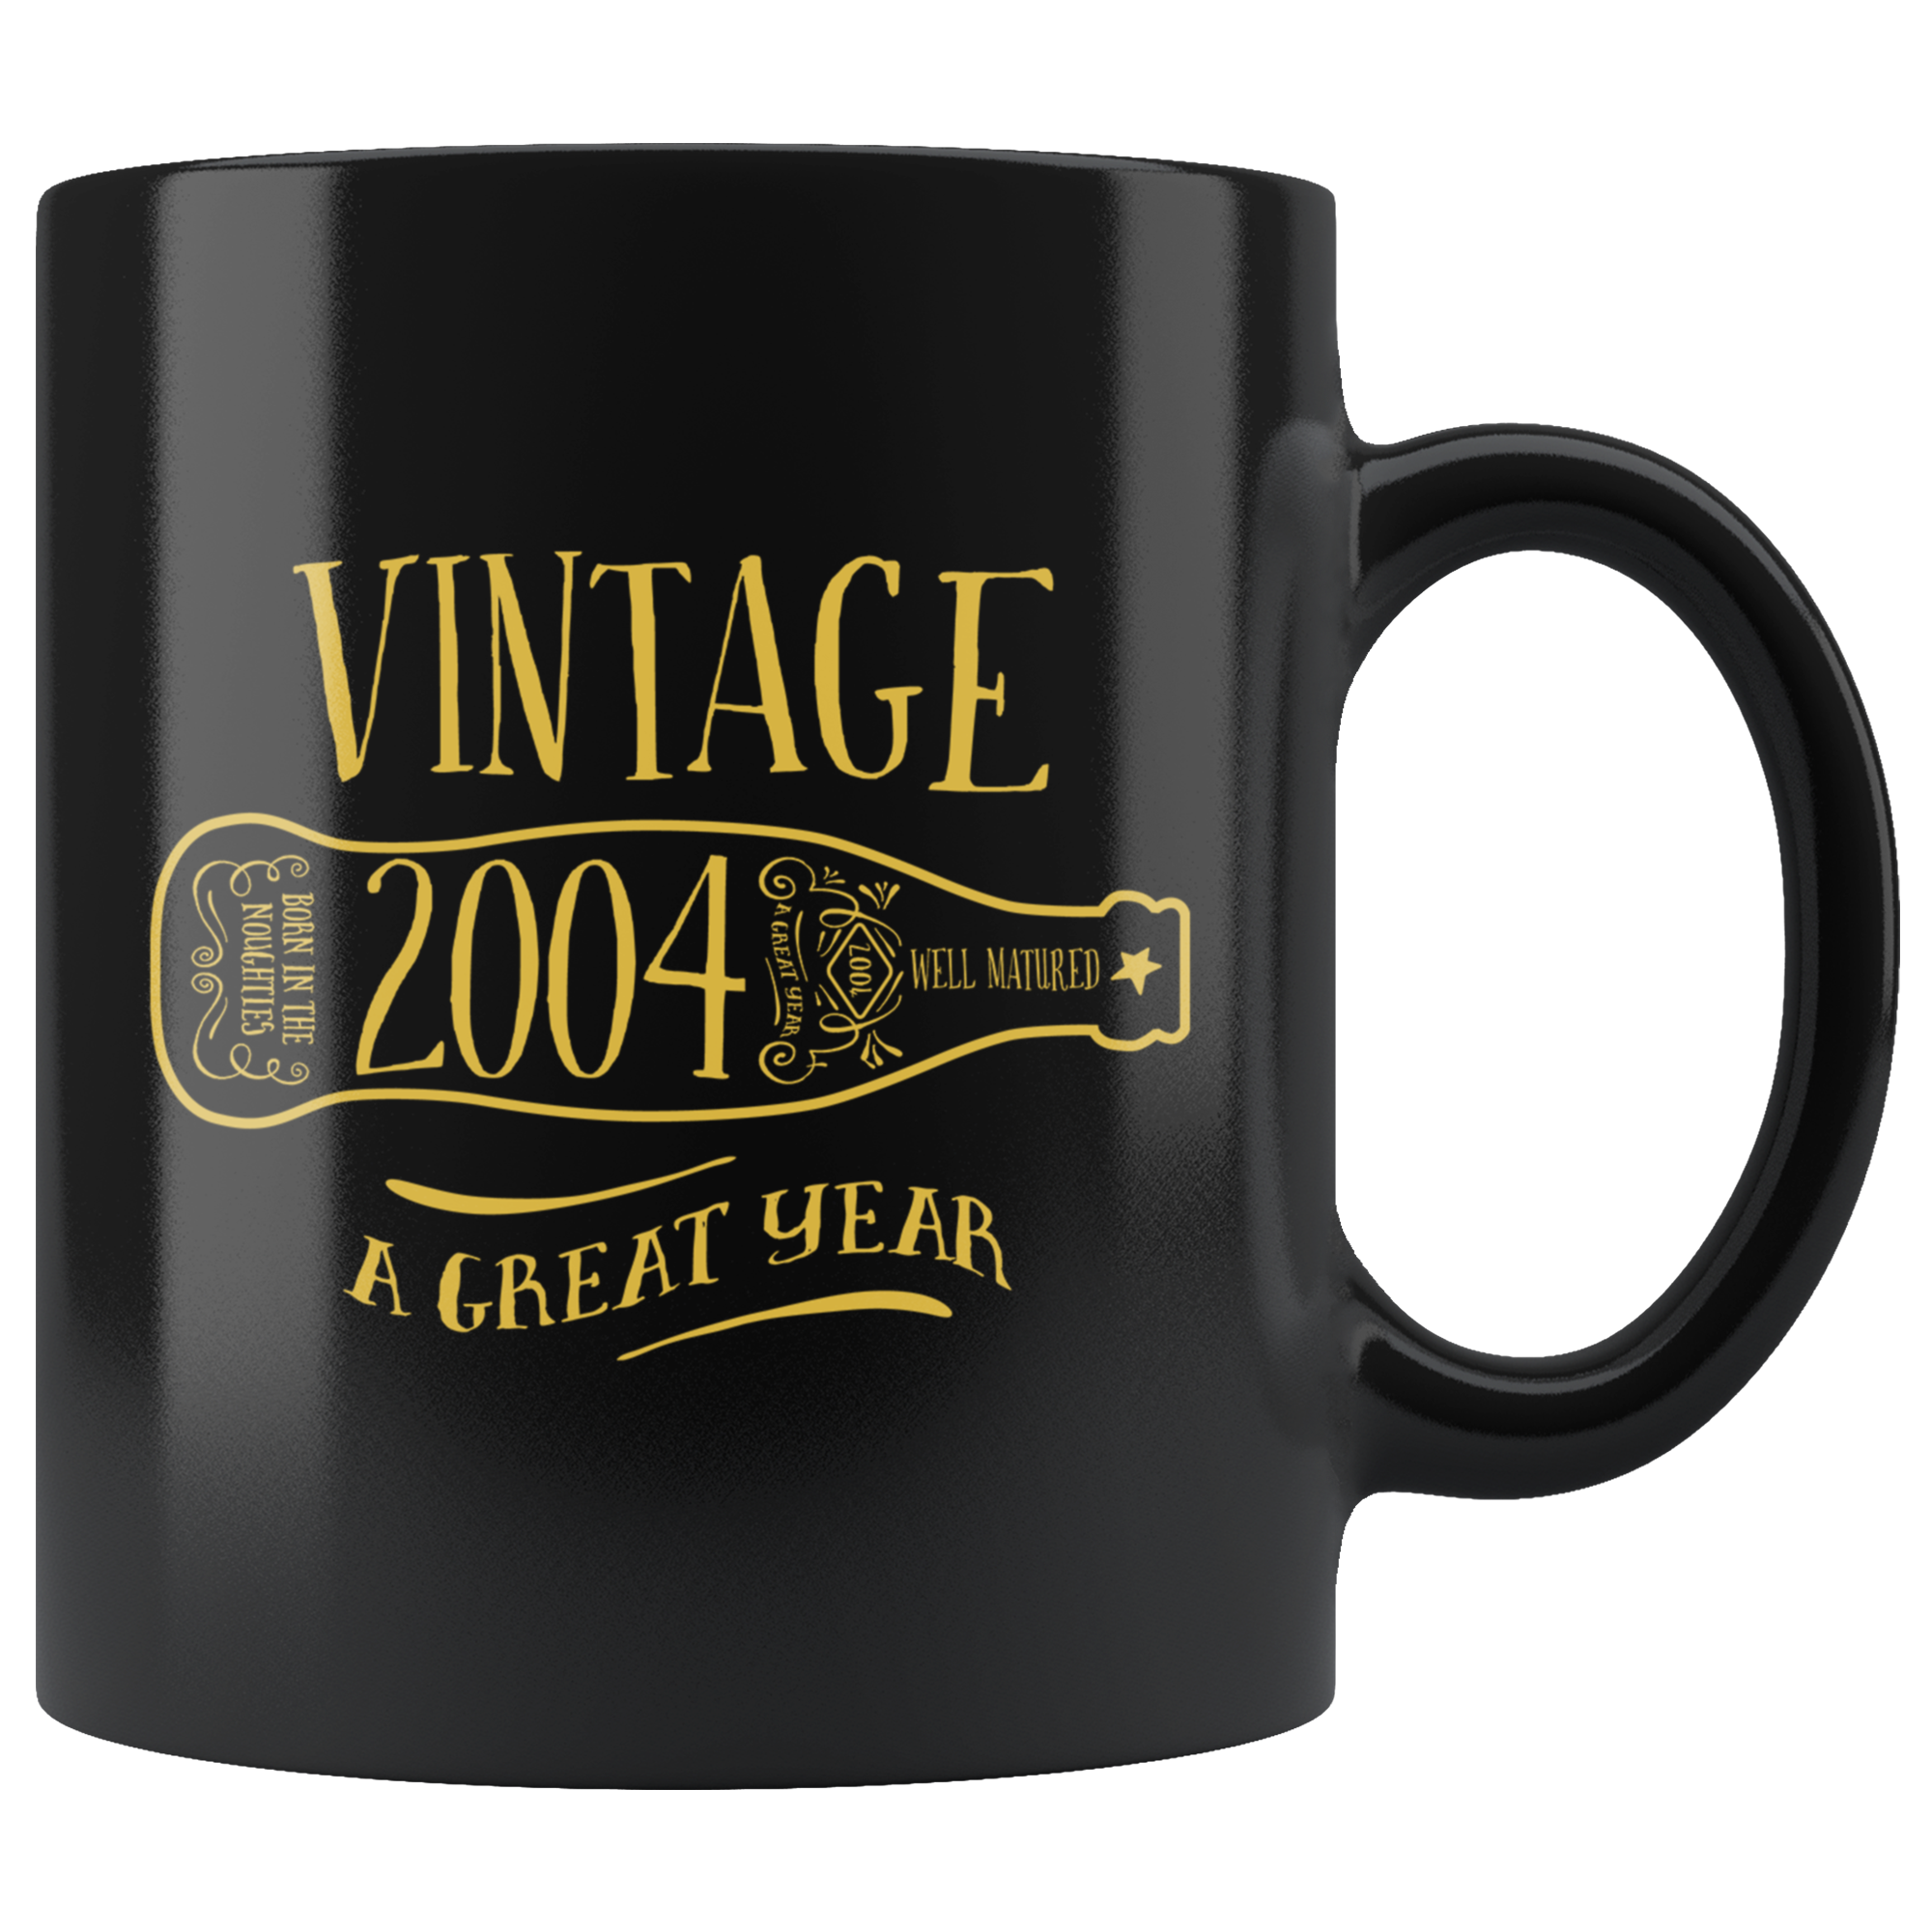 Vintage 2004 - Black Mug